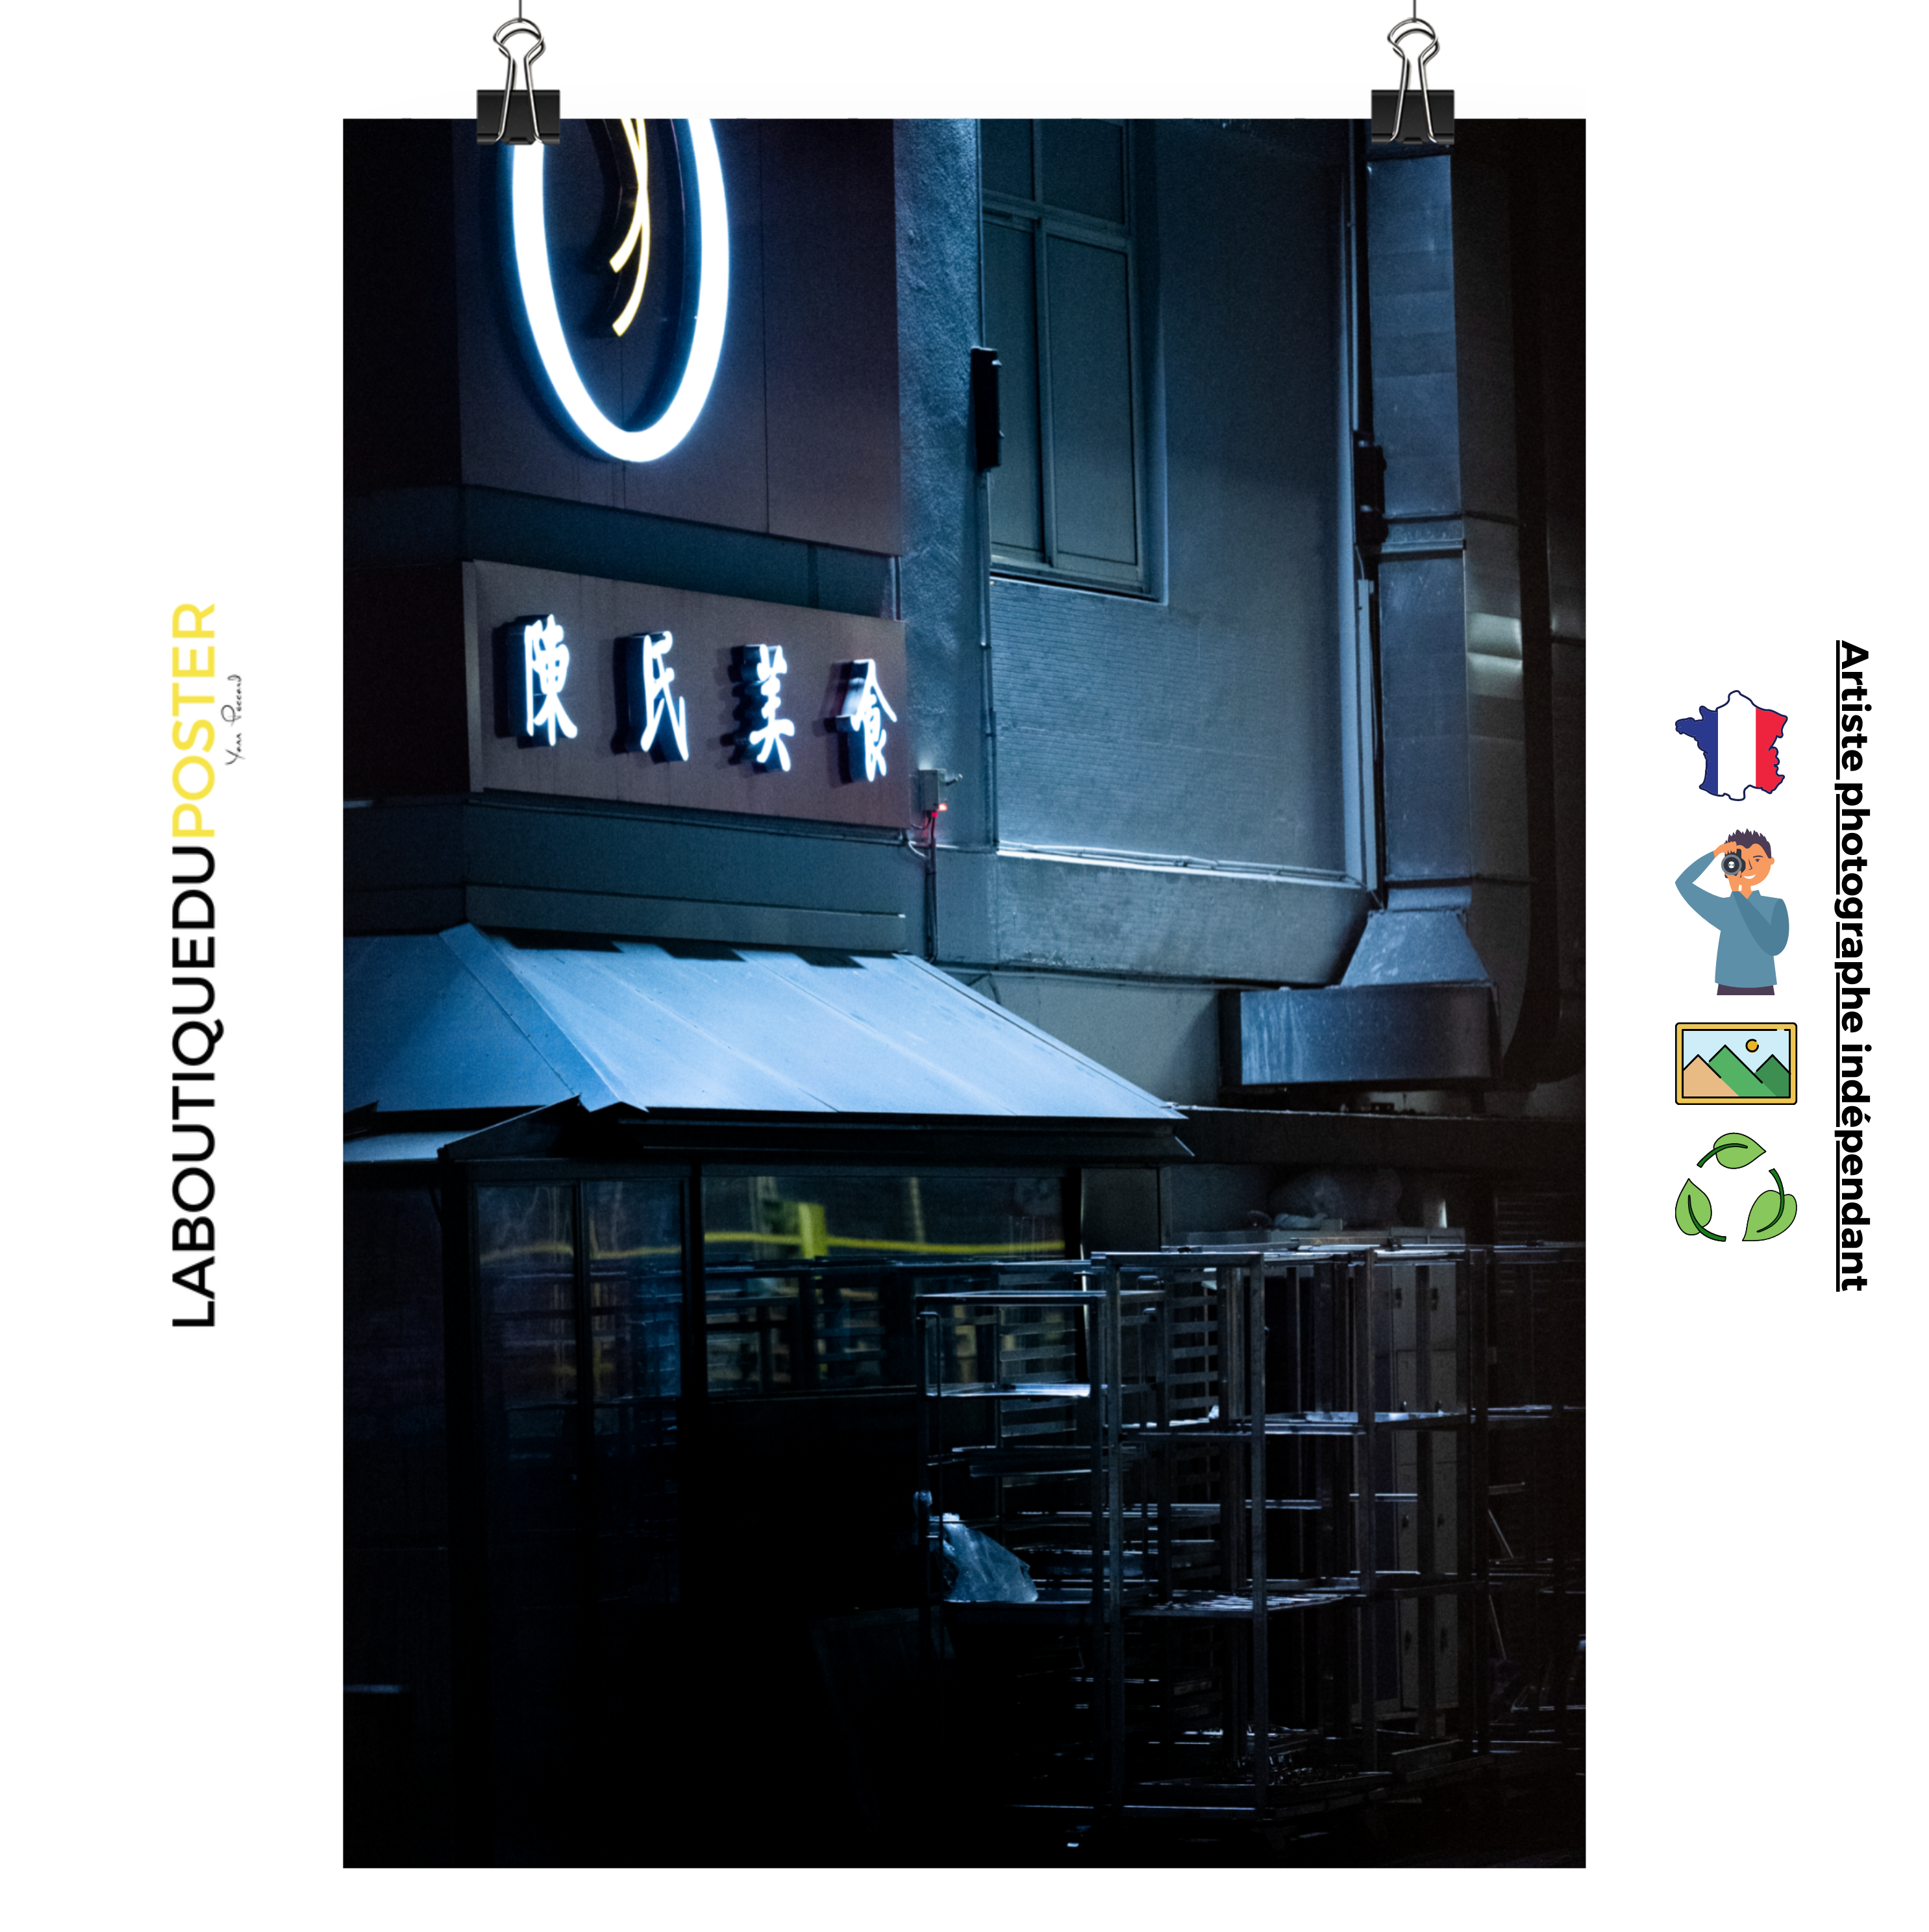 Poster mural - Chinatown in paris – Photographie quartier chinois paris – Poster photo, poster XXL, Photo d’art, photographie murale et des posters muraux des photographies de rue unique au monde. La boutique de posters créée par un Photographe français.